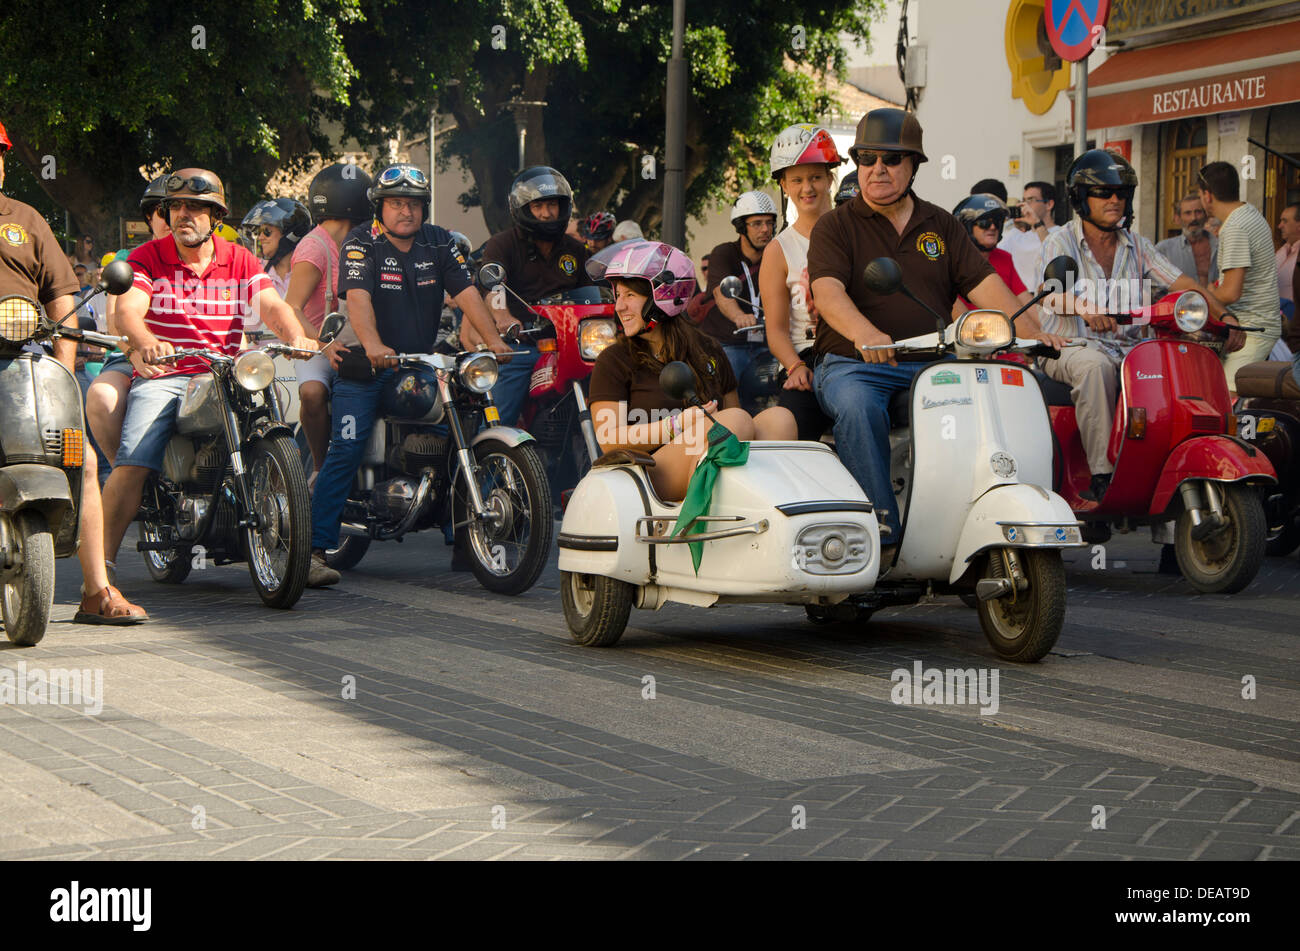 Groupe de motos classiques lors d'une réunion à moto vintage Coin, Andalousie, espagne. Banque D'Images